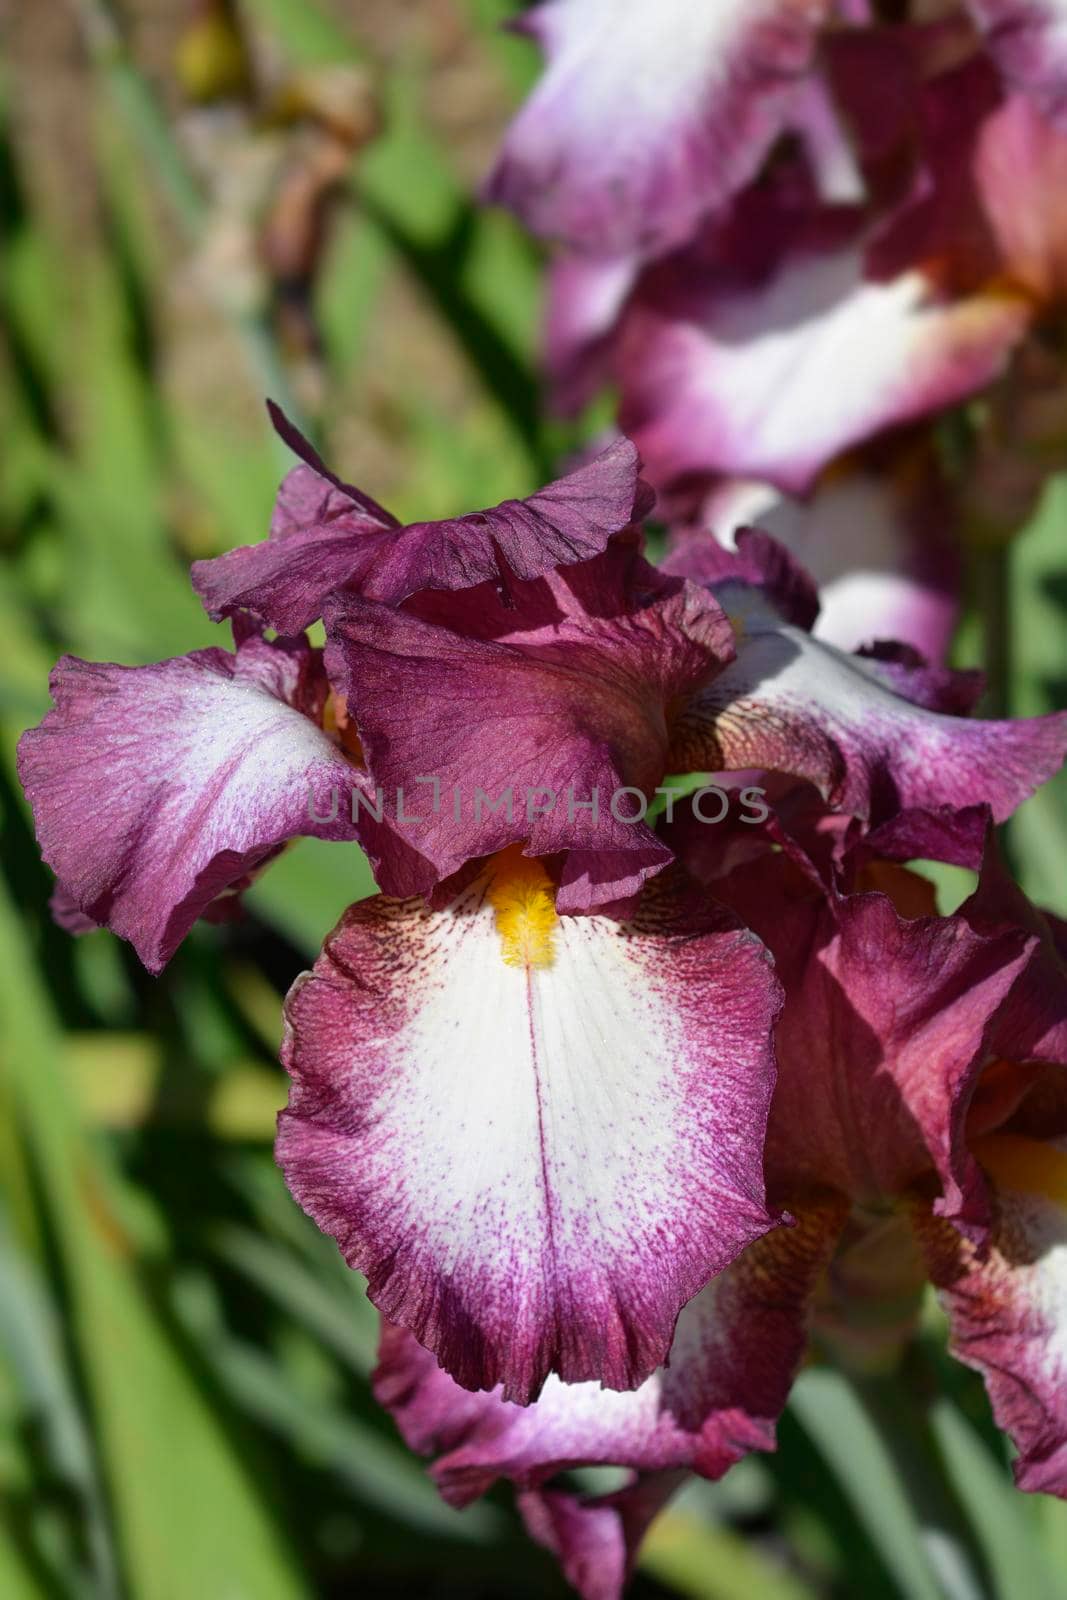 Tall bearded iris Crinoline flower - Latin name - Iris barbata elatior Crinoline